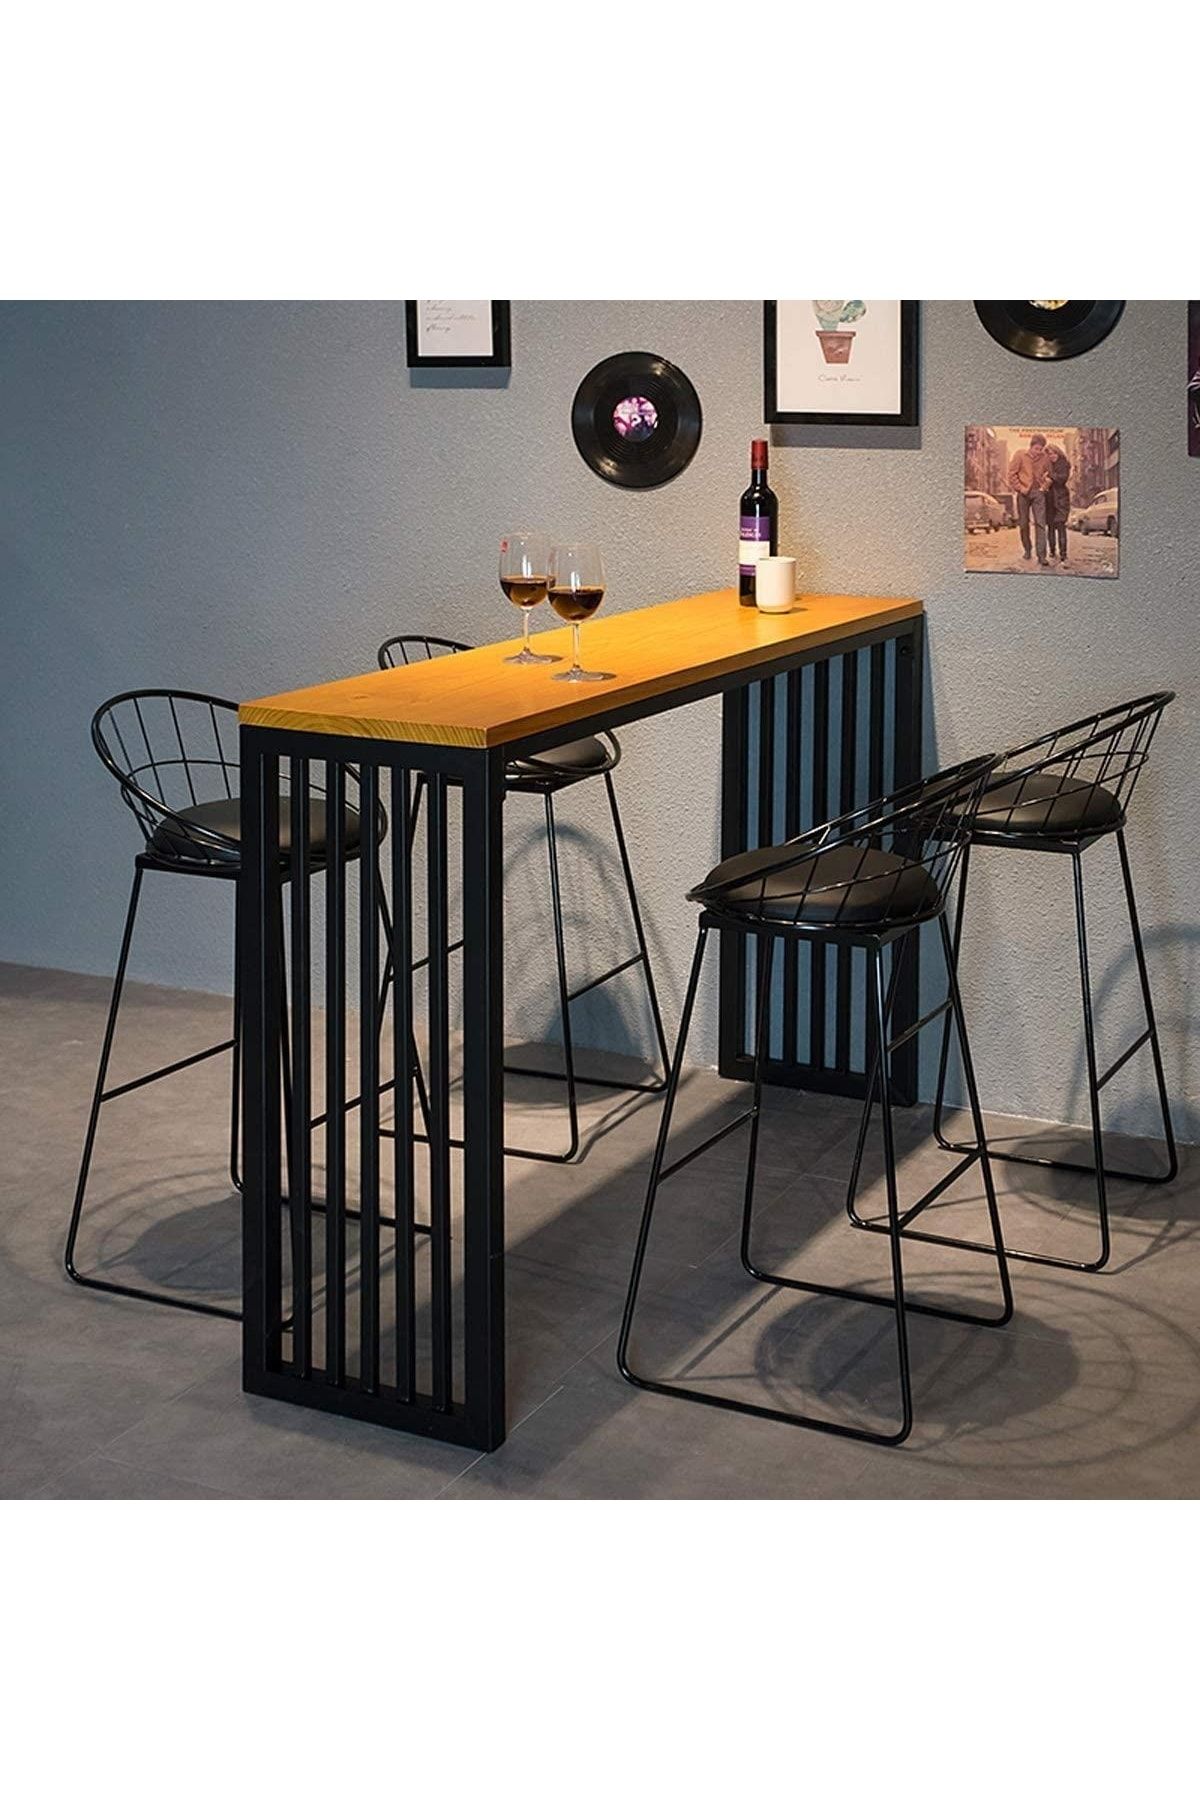 İlgi Trafik Bar Masası Yüksek Mutfak Masası, Retro Tasarım Ahşaplı Masa